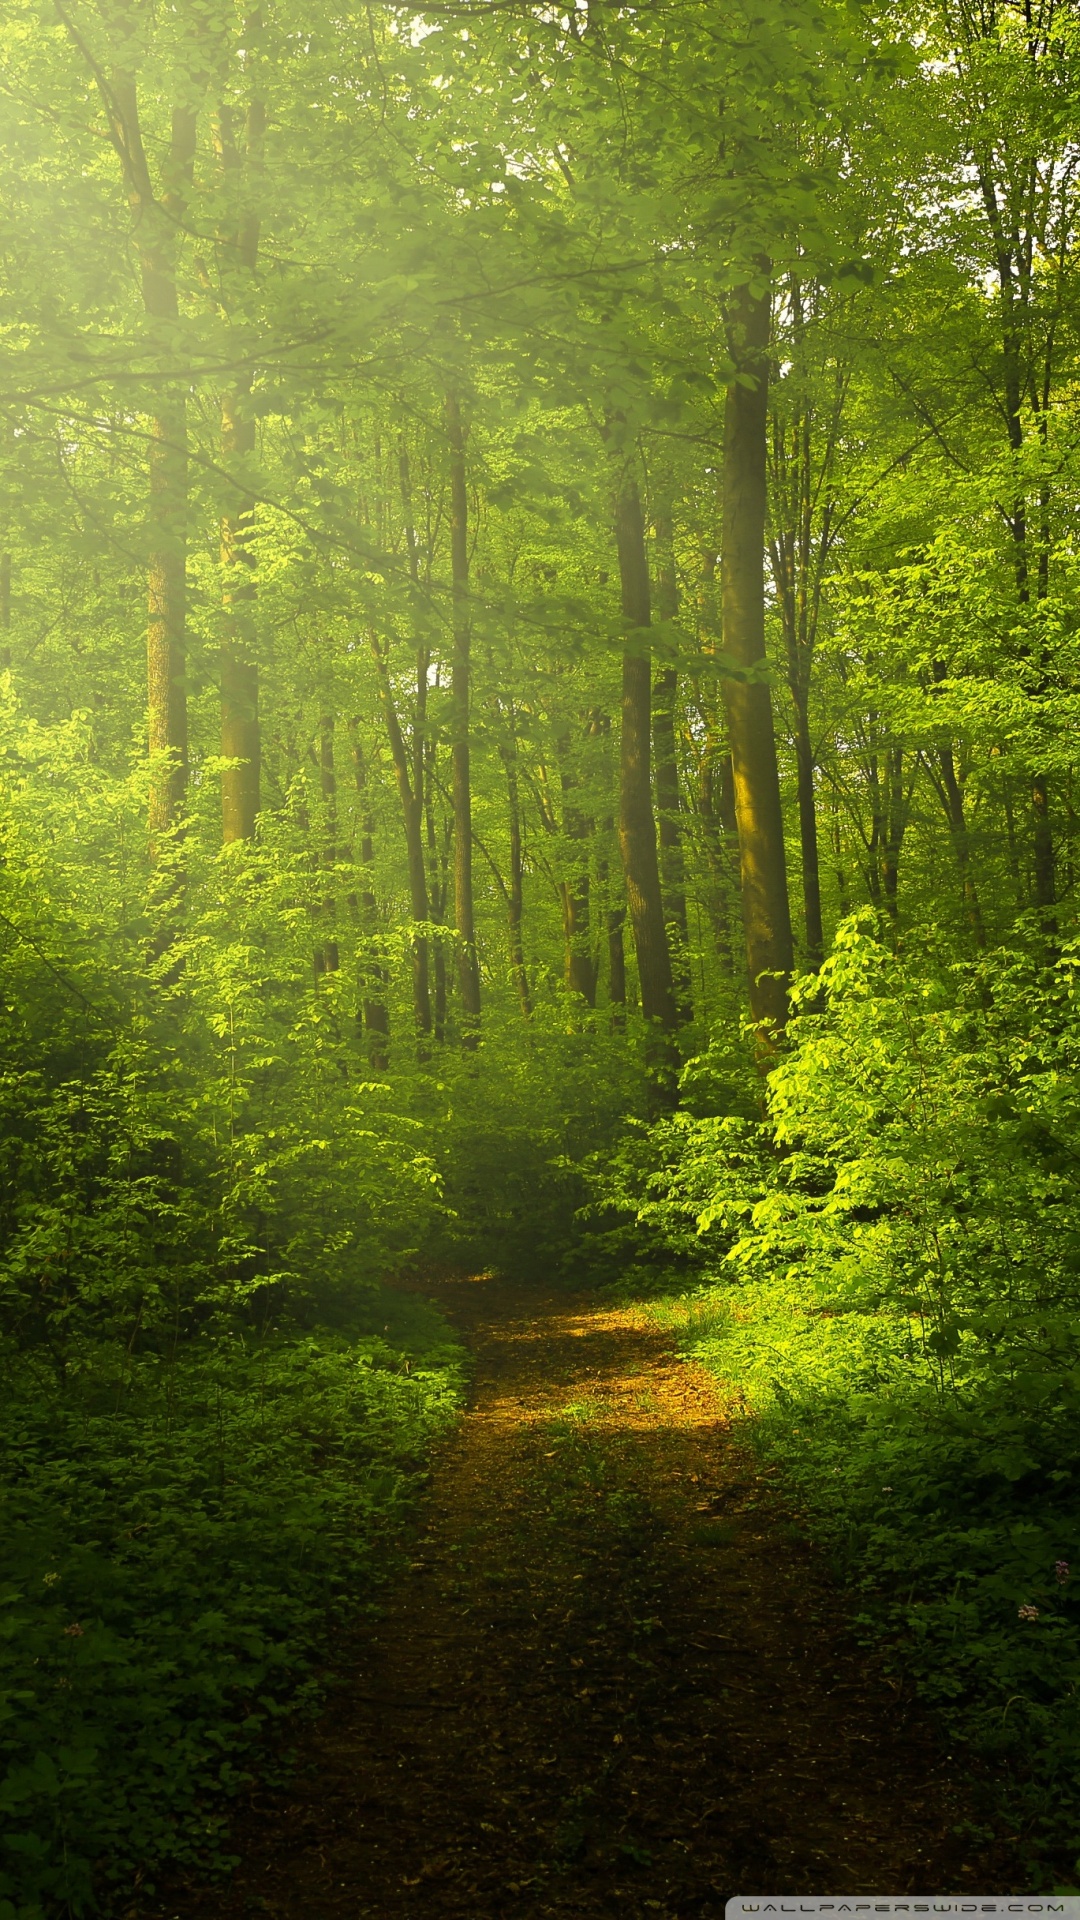 自然写真の壁紙,自然の風景,自然,森林,緑,木